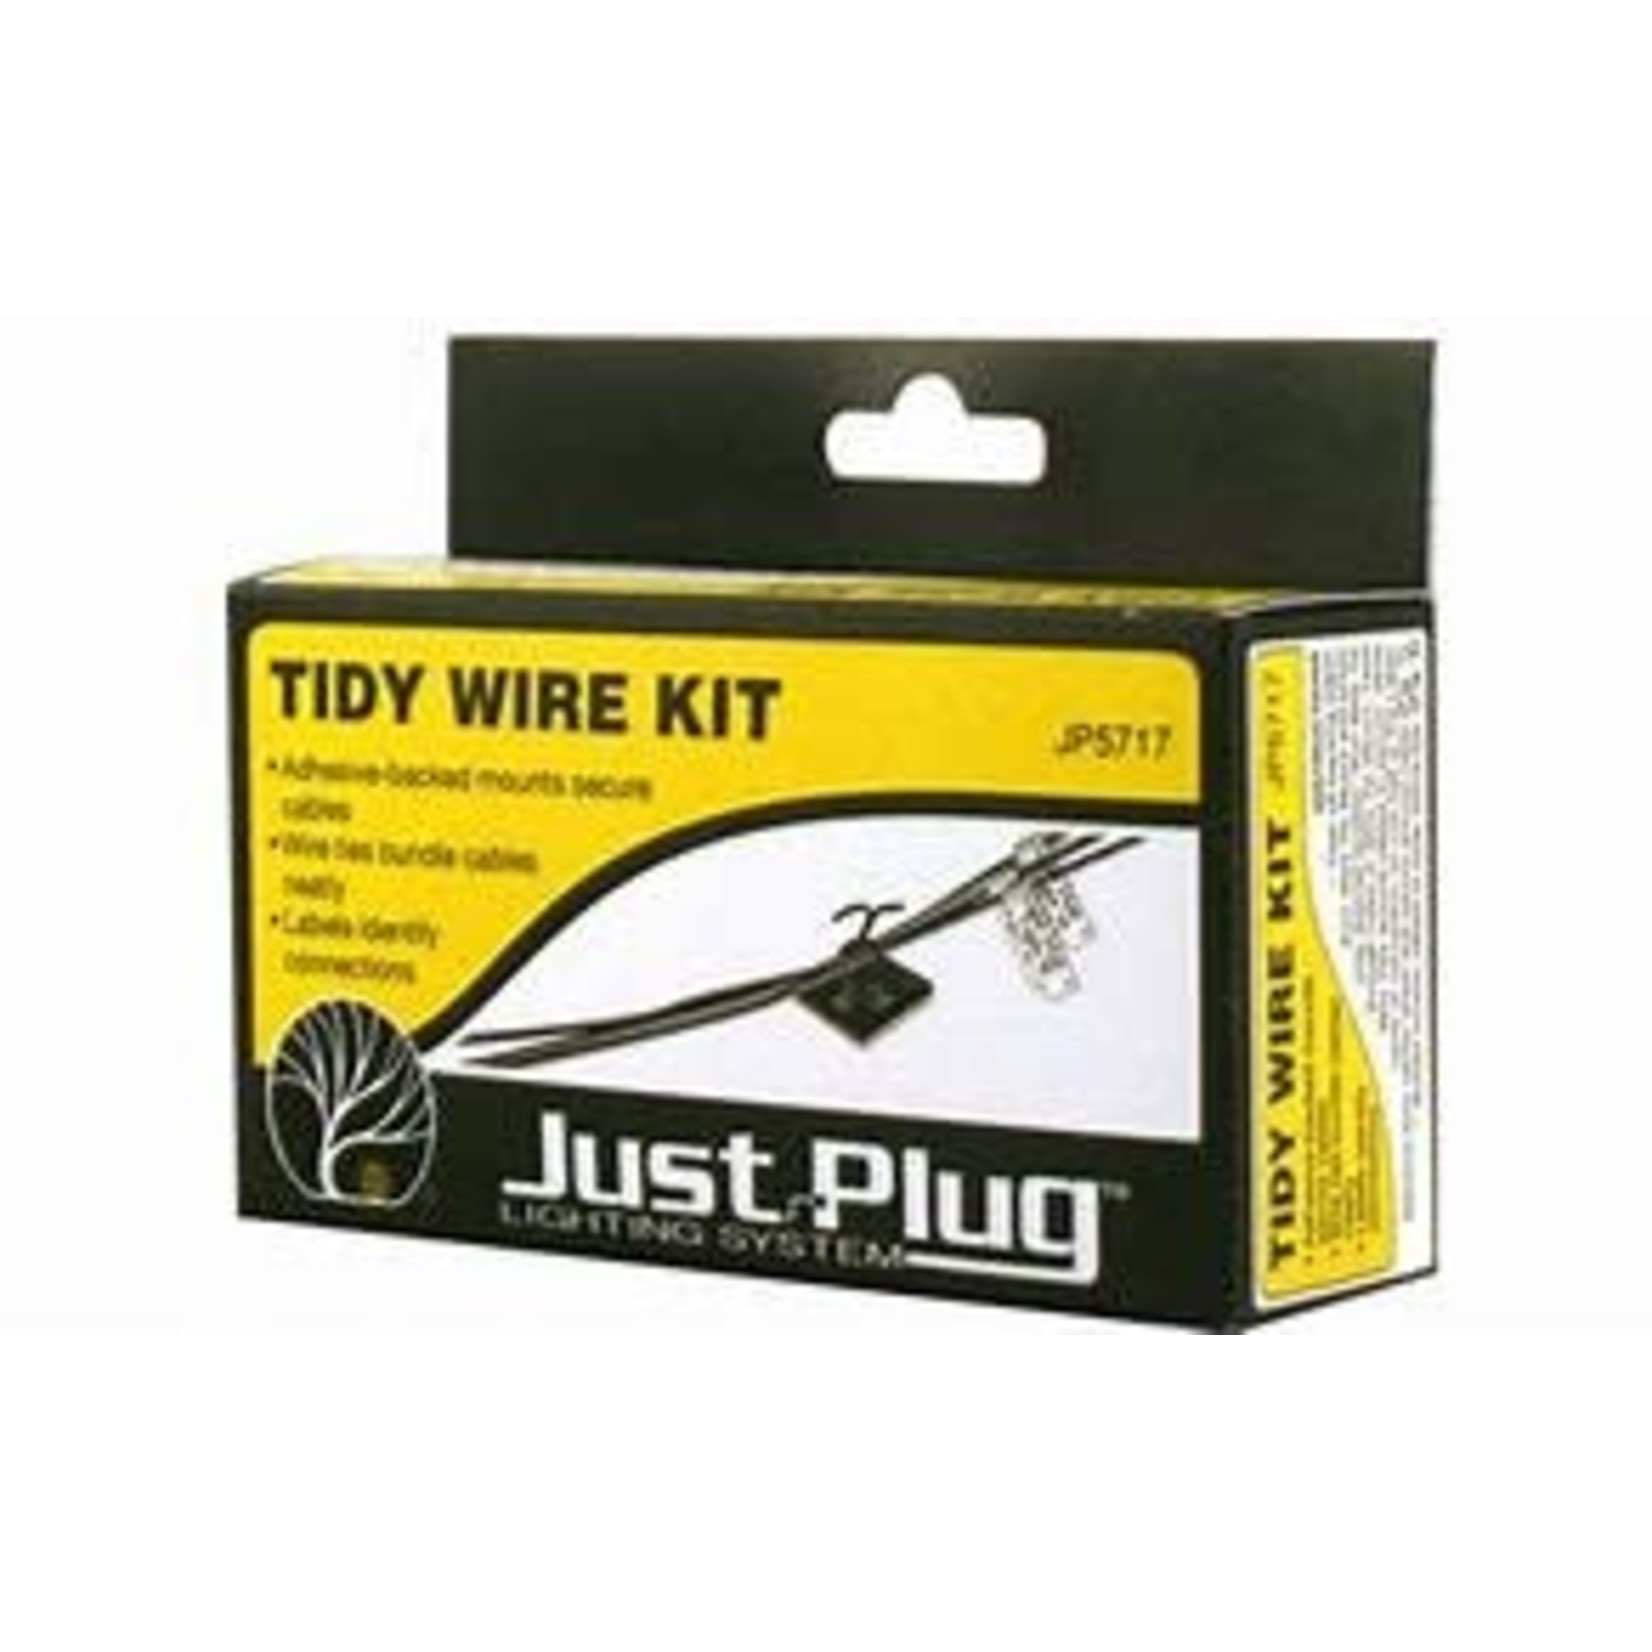 Just Plug Tidy Wire Kit